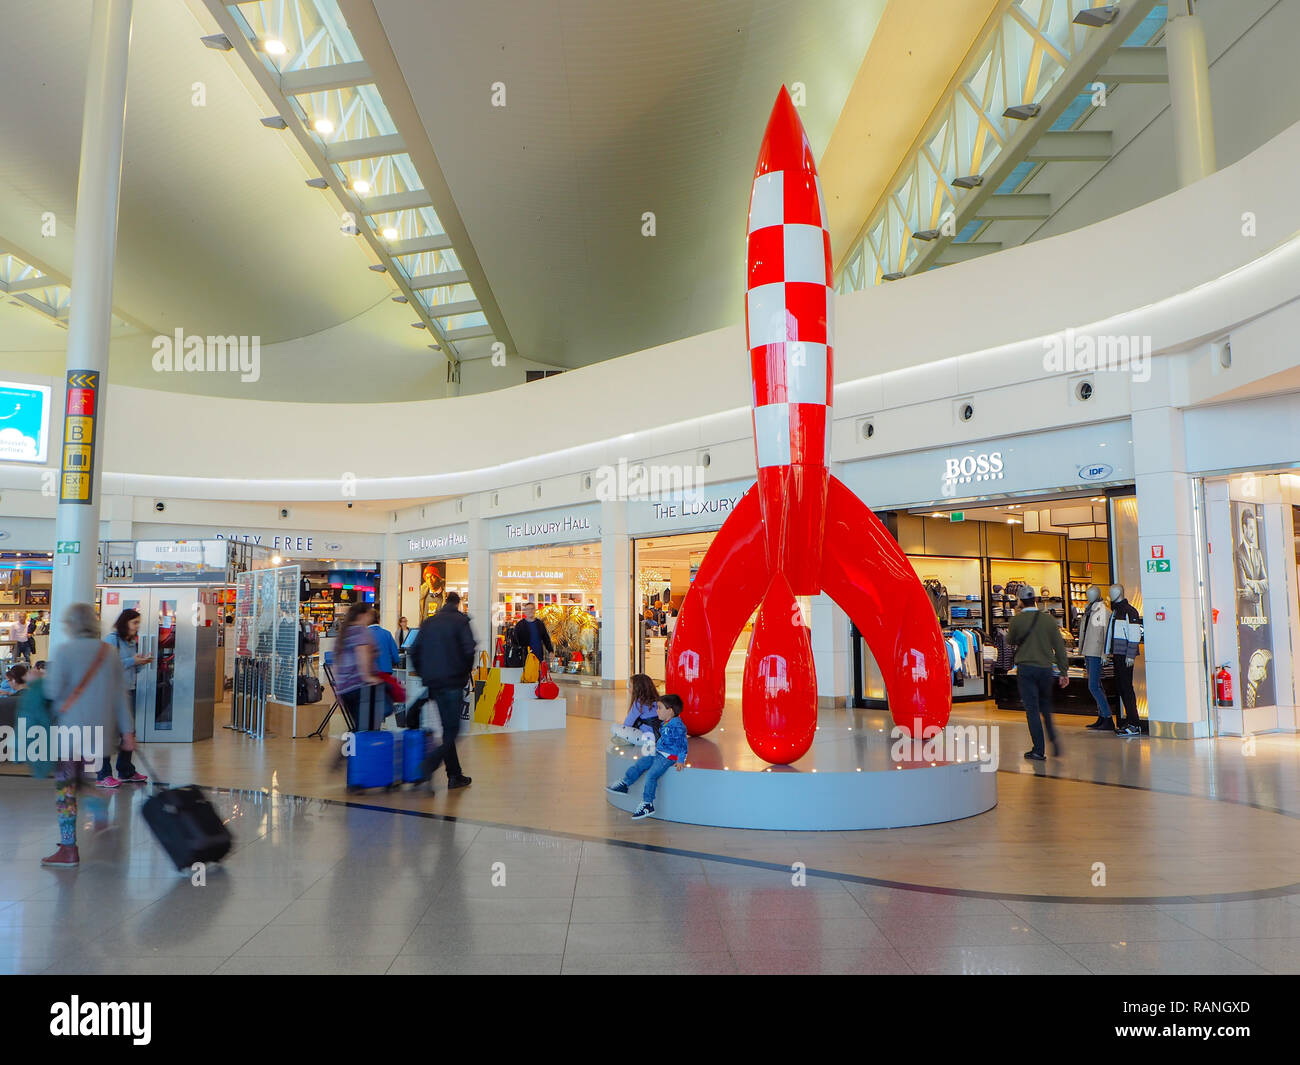 Bruxelles, Belgio - Agosto 2018: Persone in duty-free shopping area con il grande stagno Stagno rocket in mezzo all'aeroporto di Bruxelles il terminale A Foto Stock